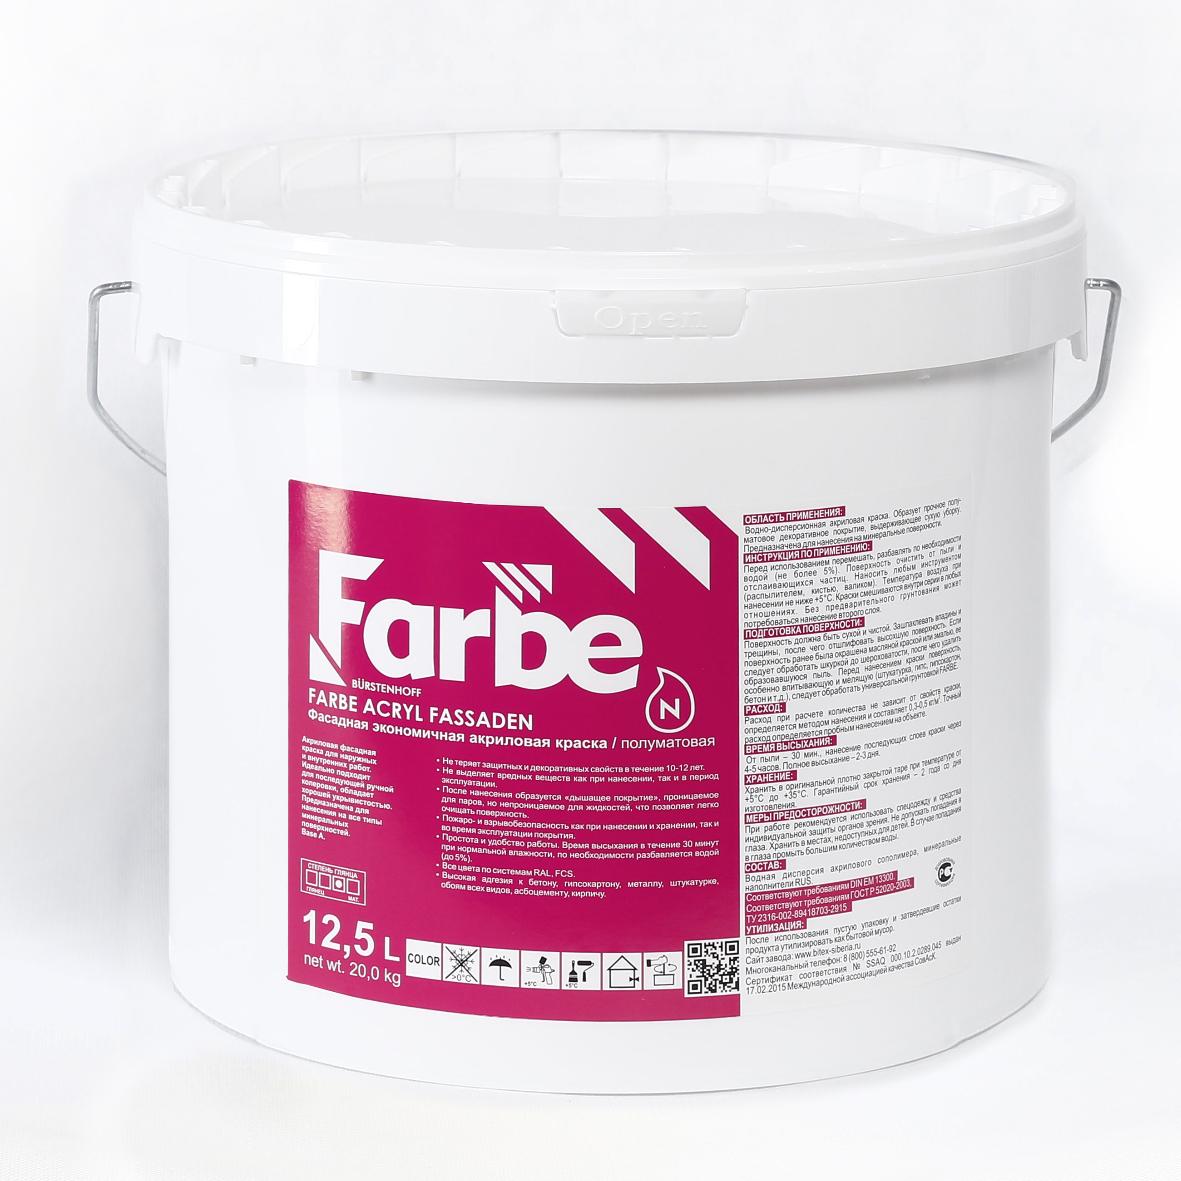 Фасадные краски FARBE ACRYL FASSADEN (База C) – Фасадная экономичная акриловая краска (20 кг) купить оптом от производителя